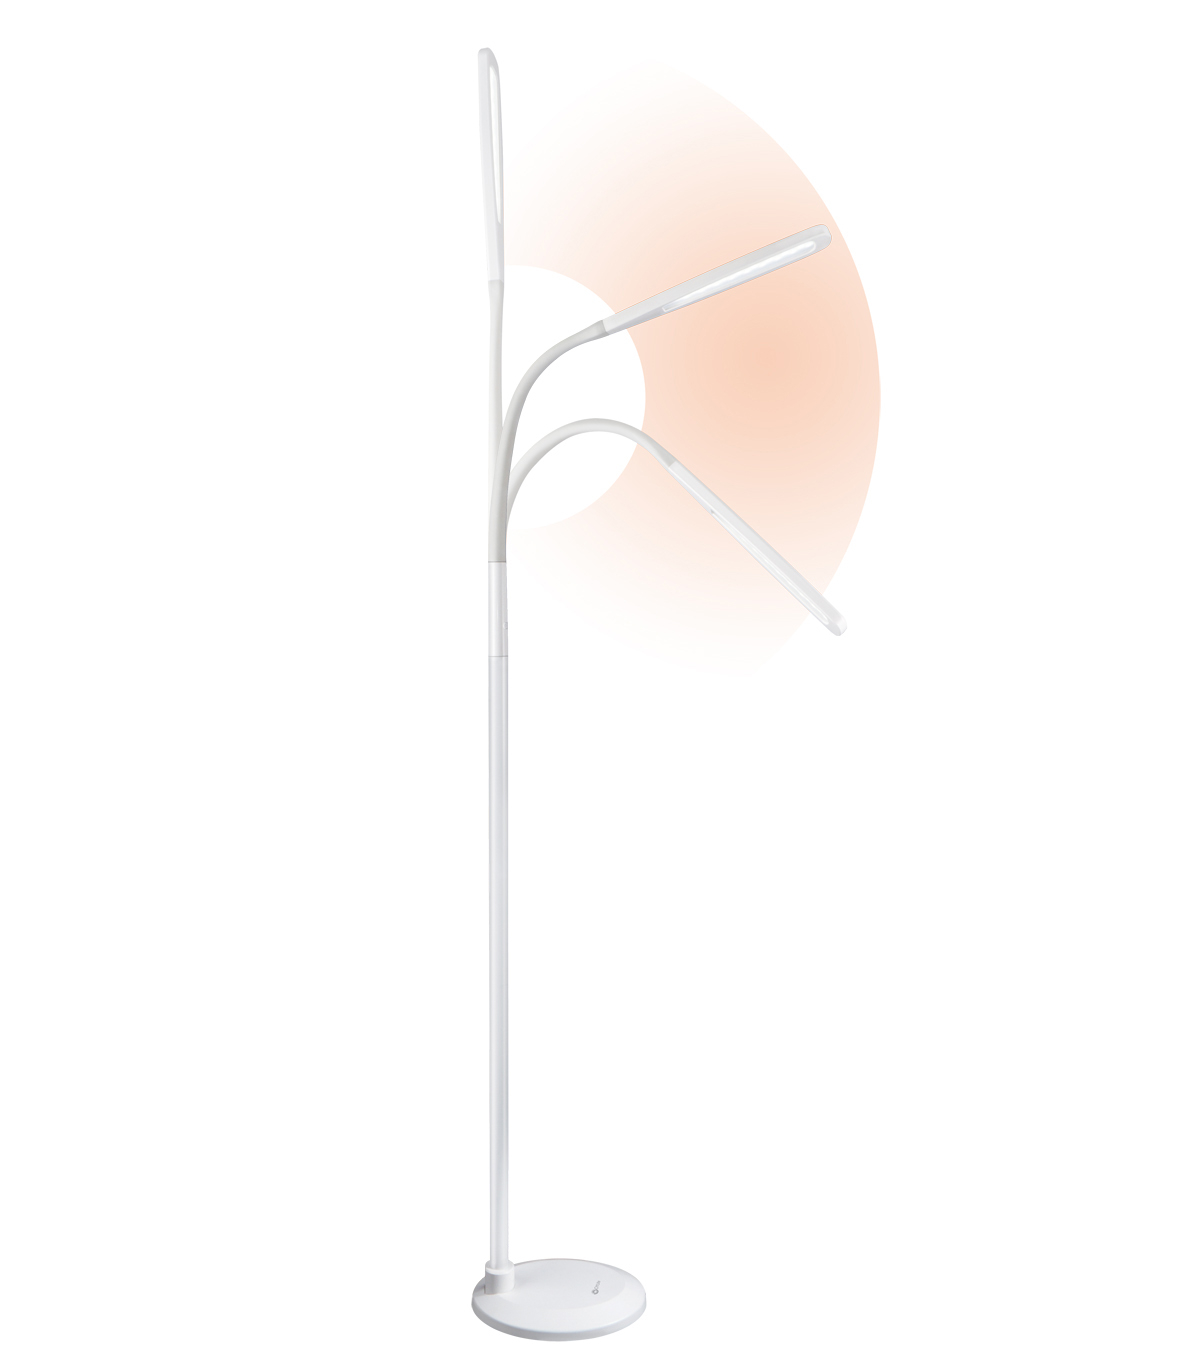 Ottlite Natural Daylight Led Flex Floor Lamp White regarding dimensions 1200 X 1360